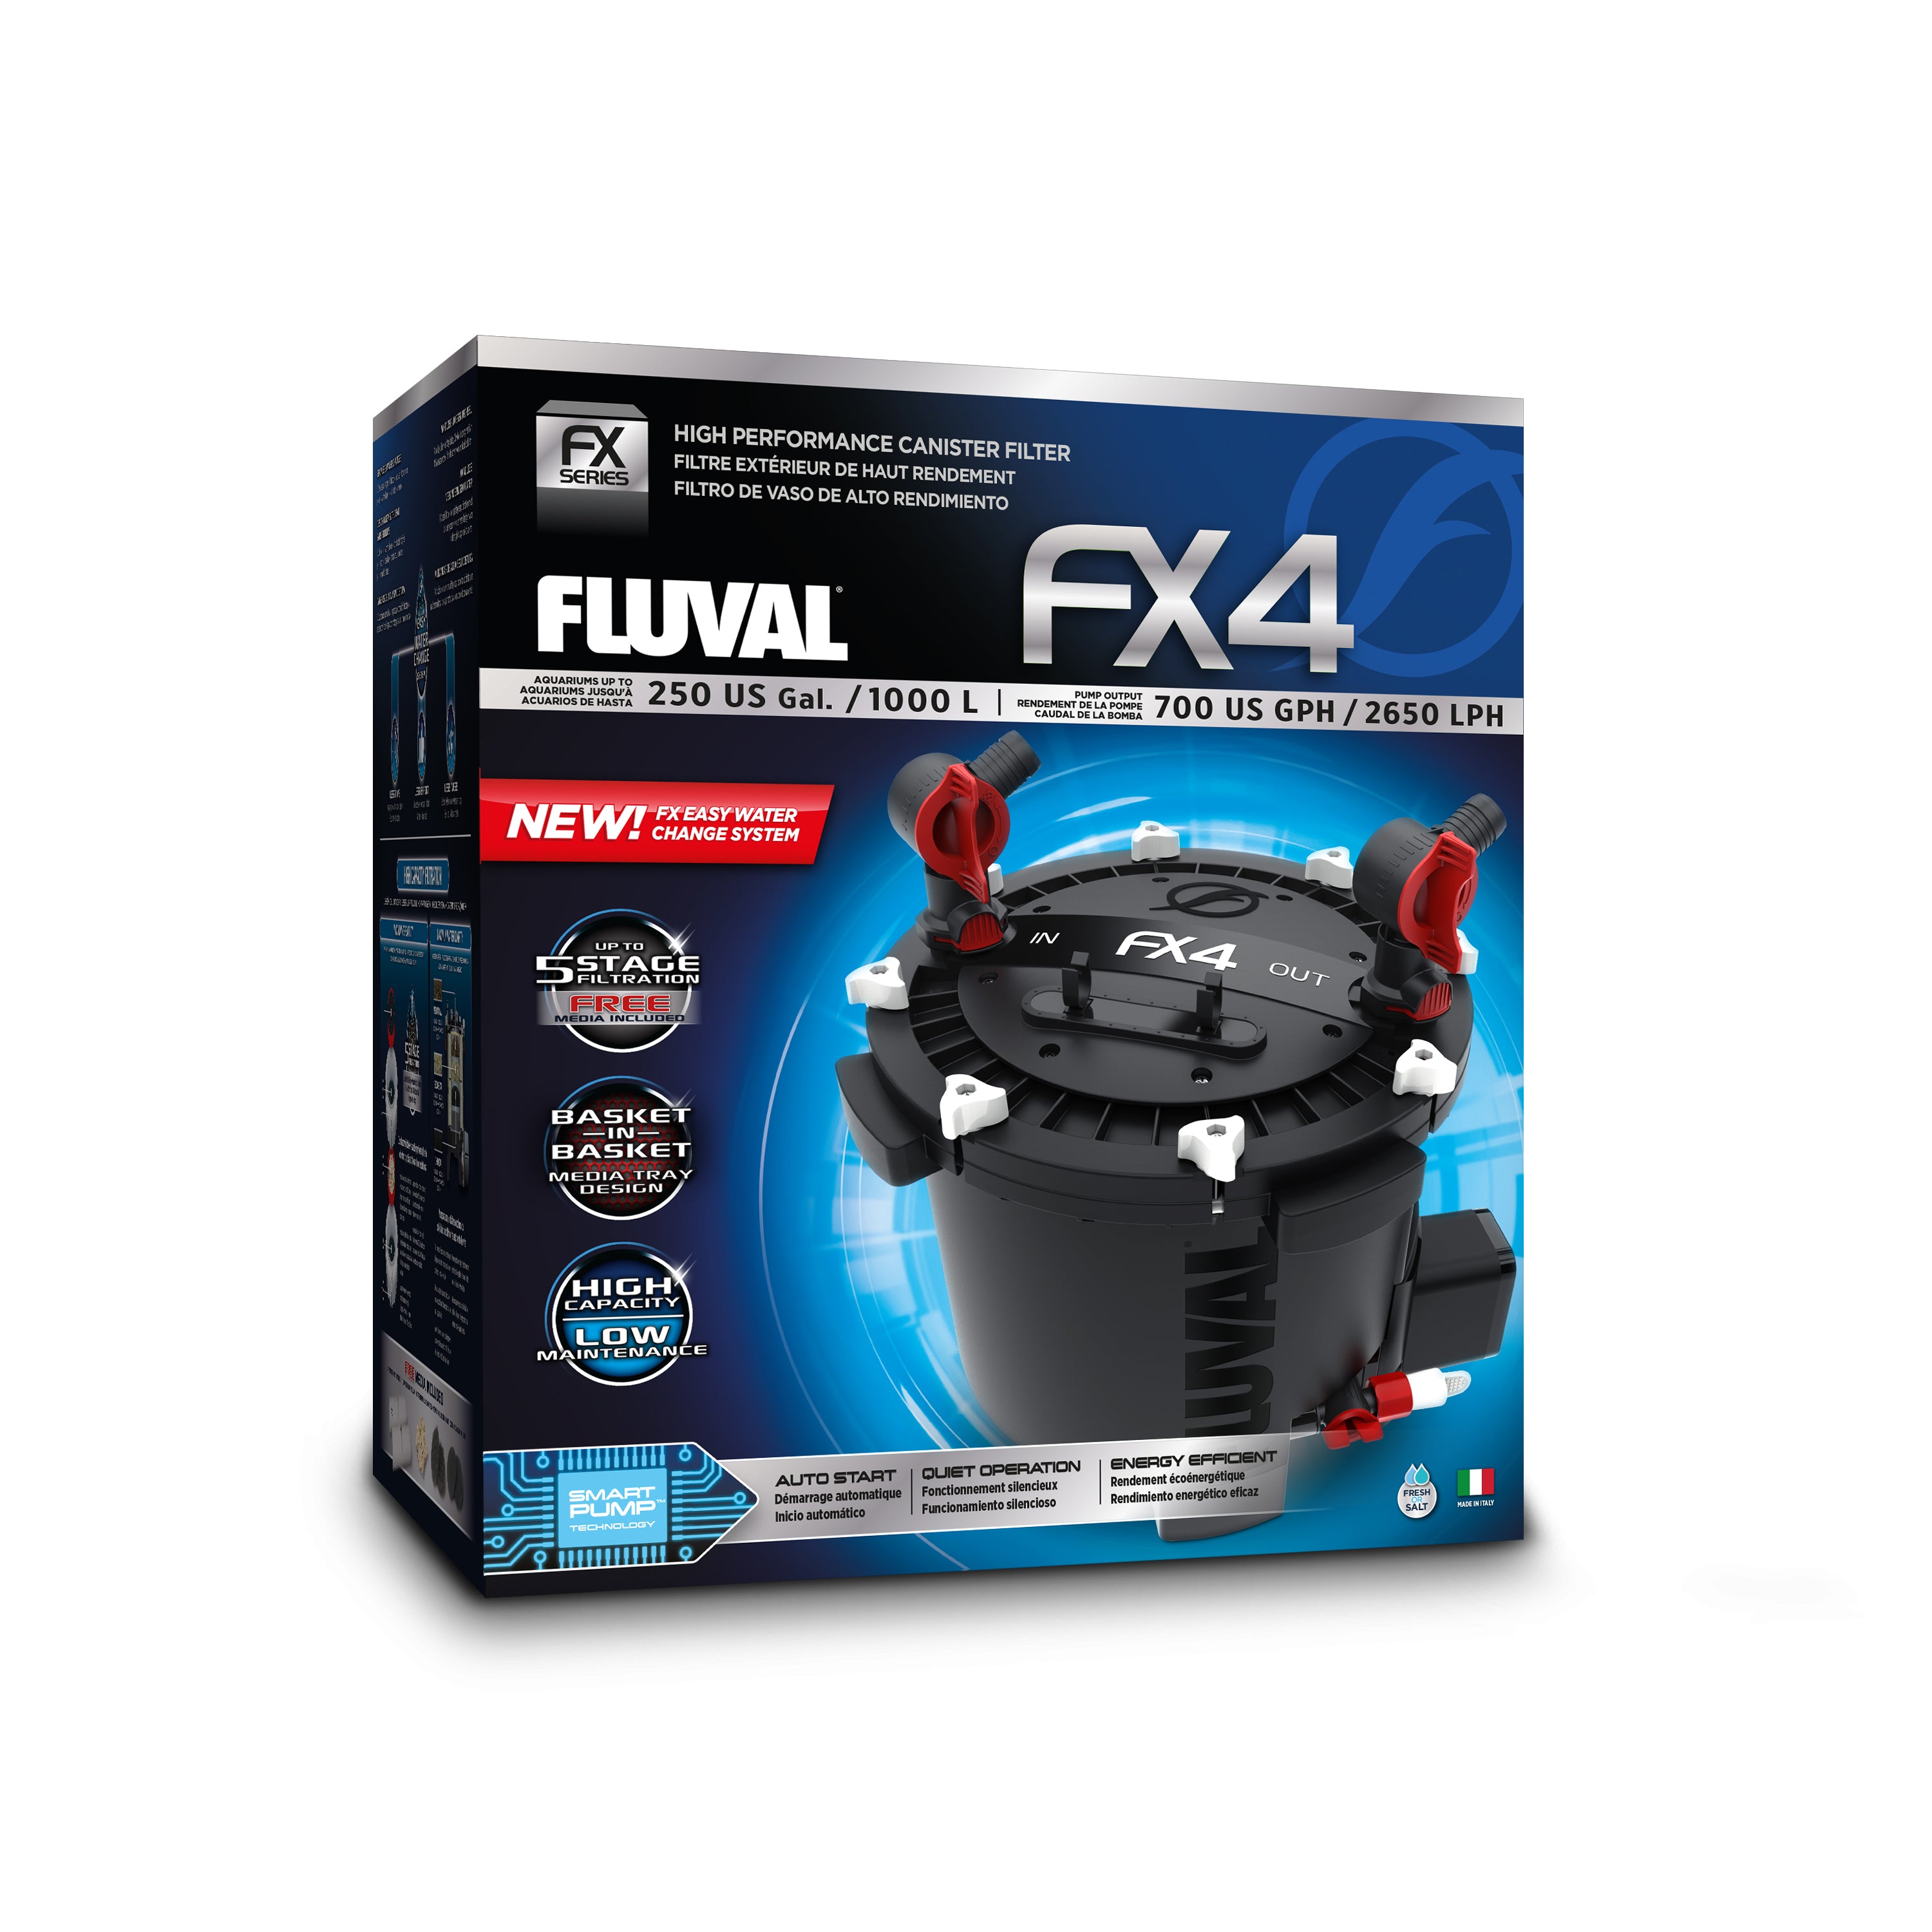 Fluval FX4 High Performance Canister Filter For Sale | Fluval FX4 For Sale | FX4 Canister Filter For Sale | 